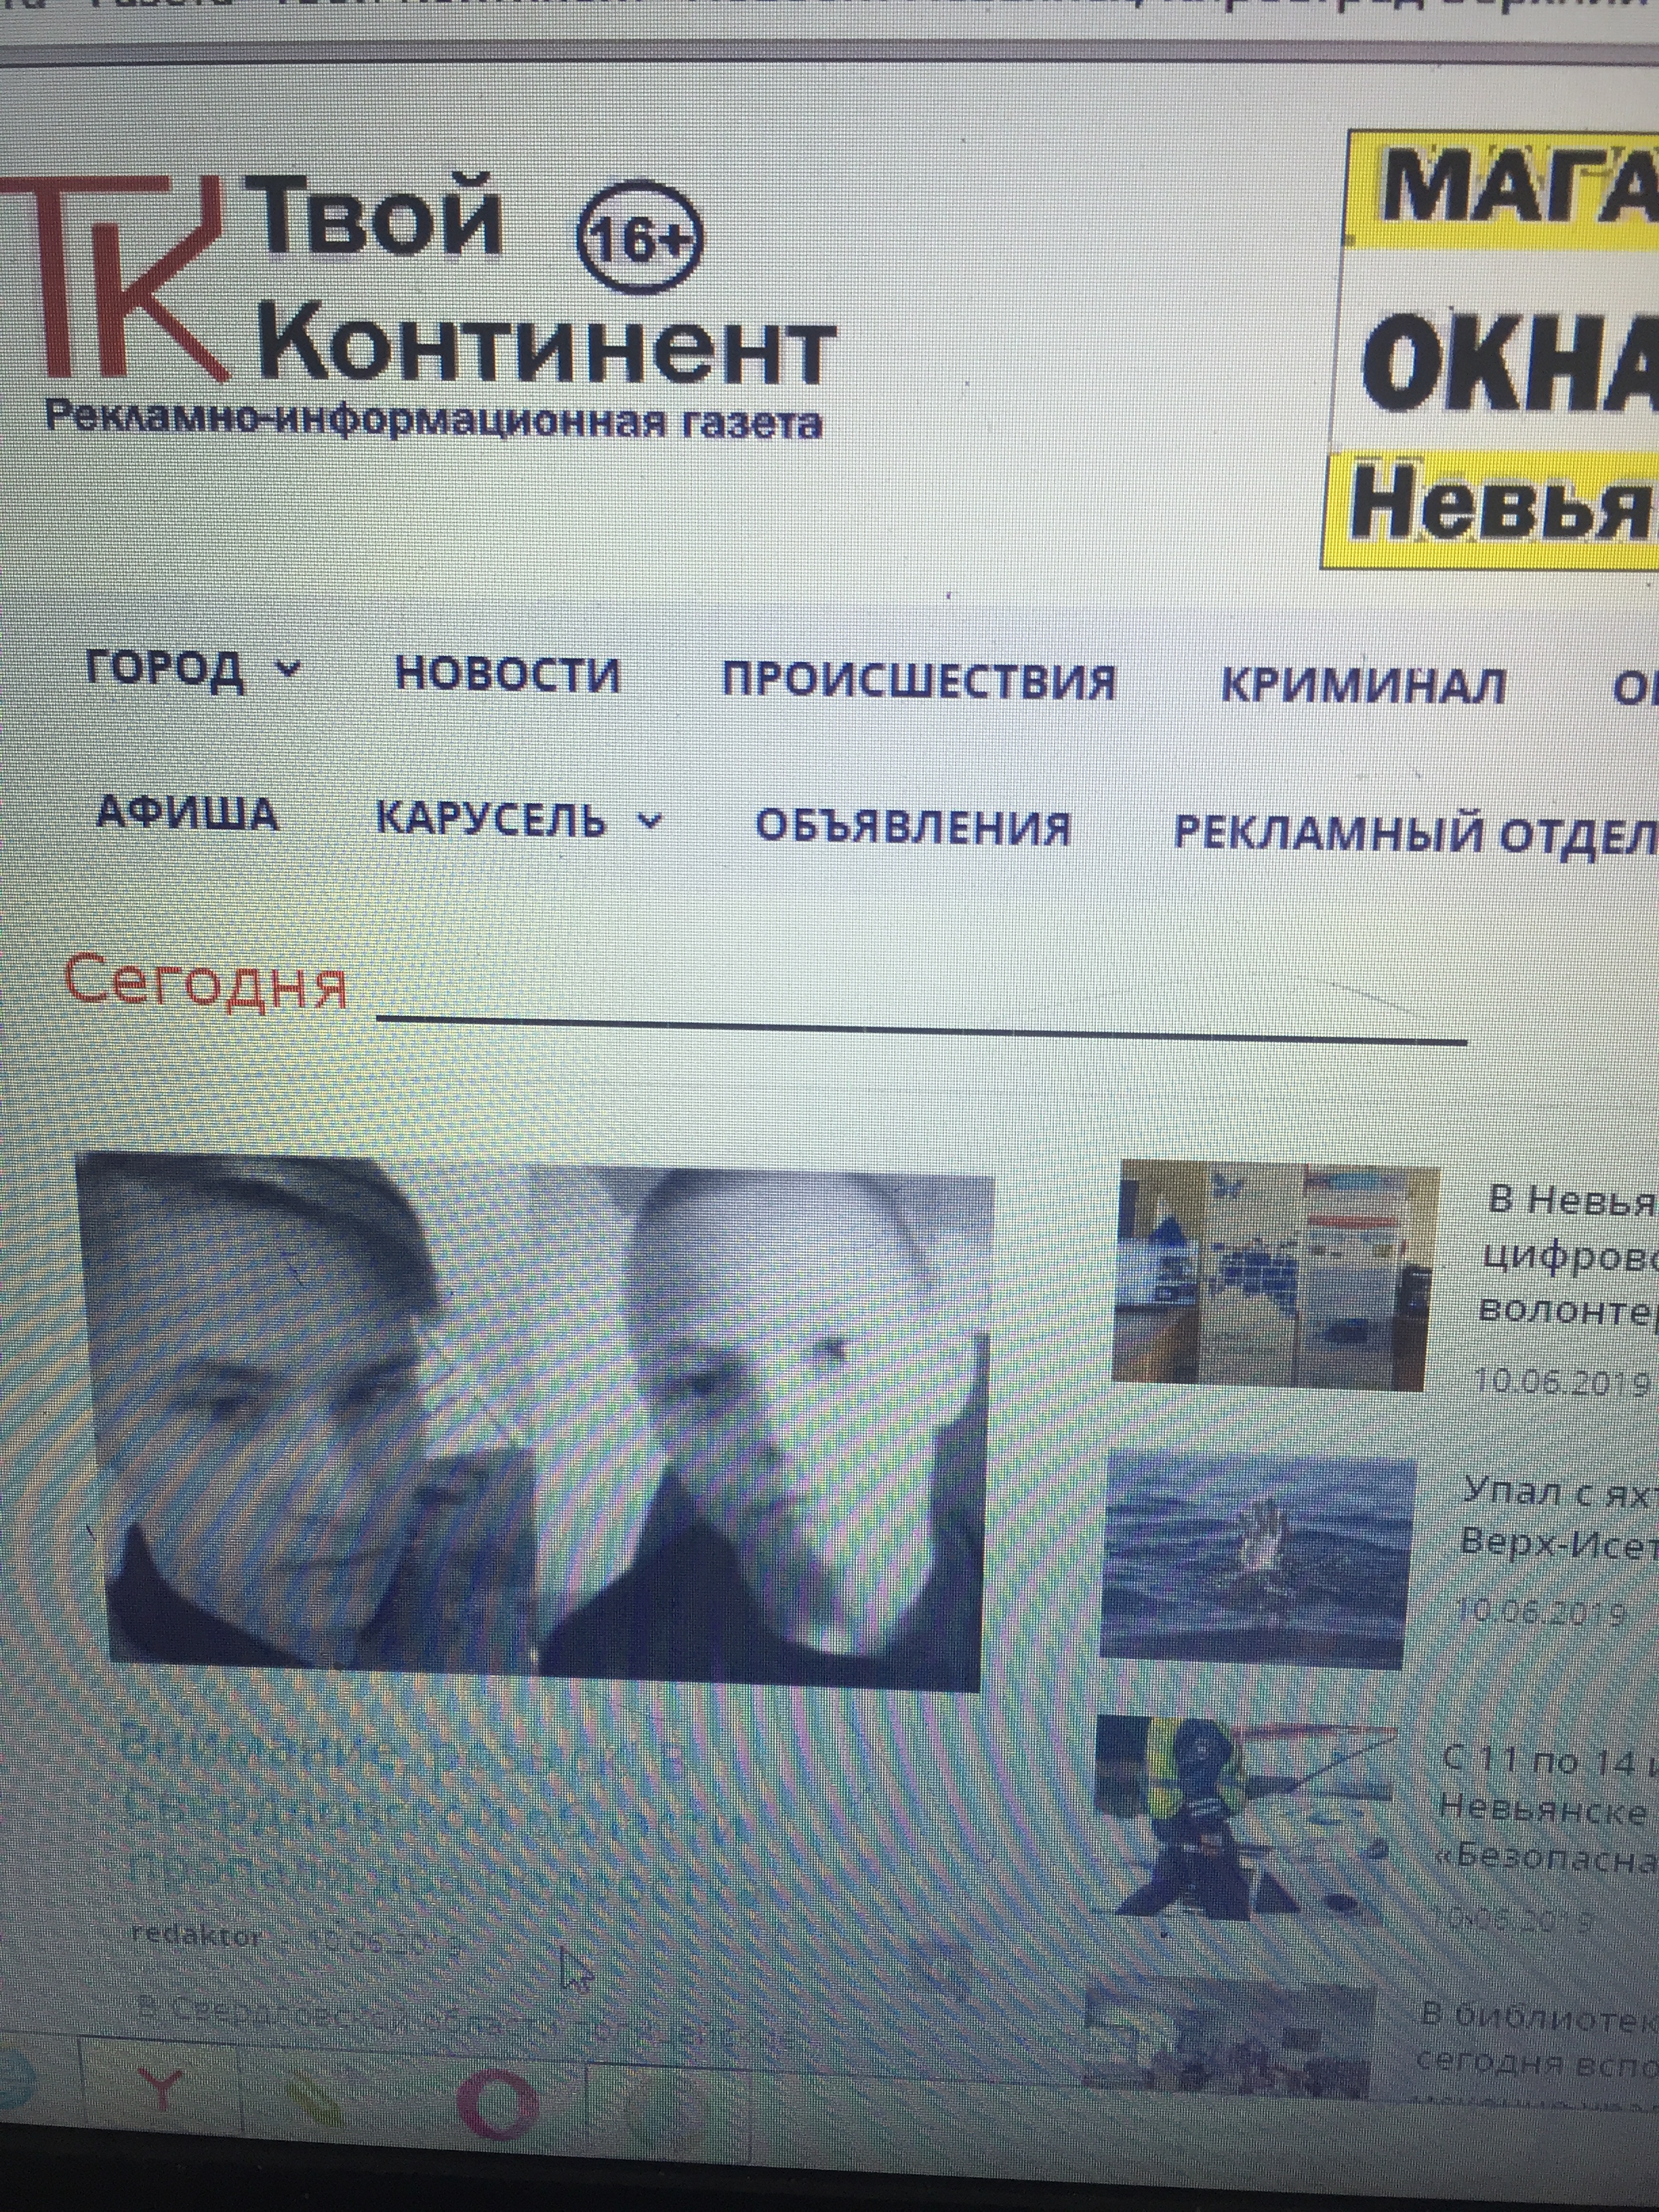 Реклама в интернете в Кировграде, Невьянске и Верхнем Тагиле